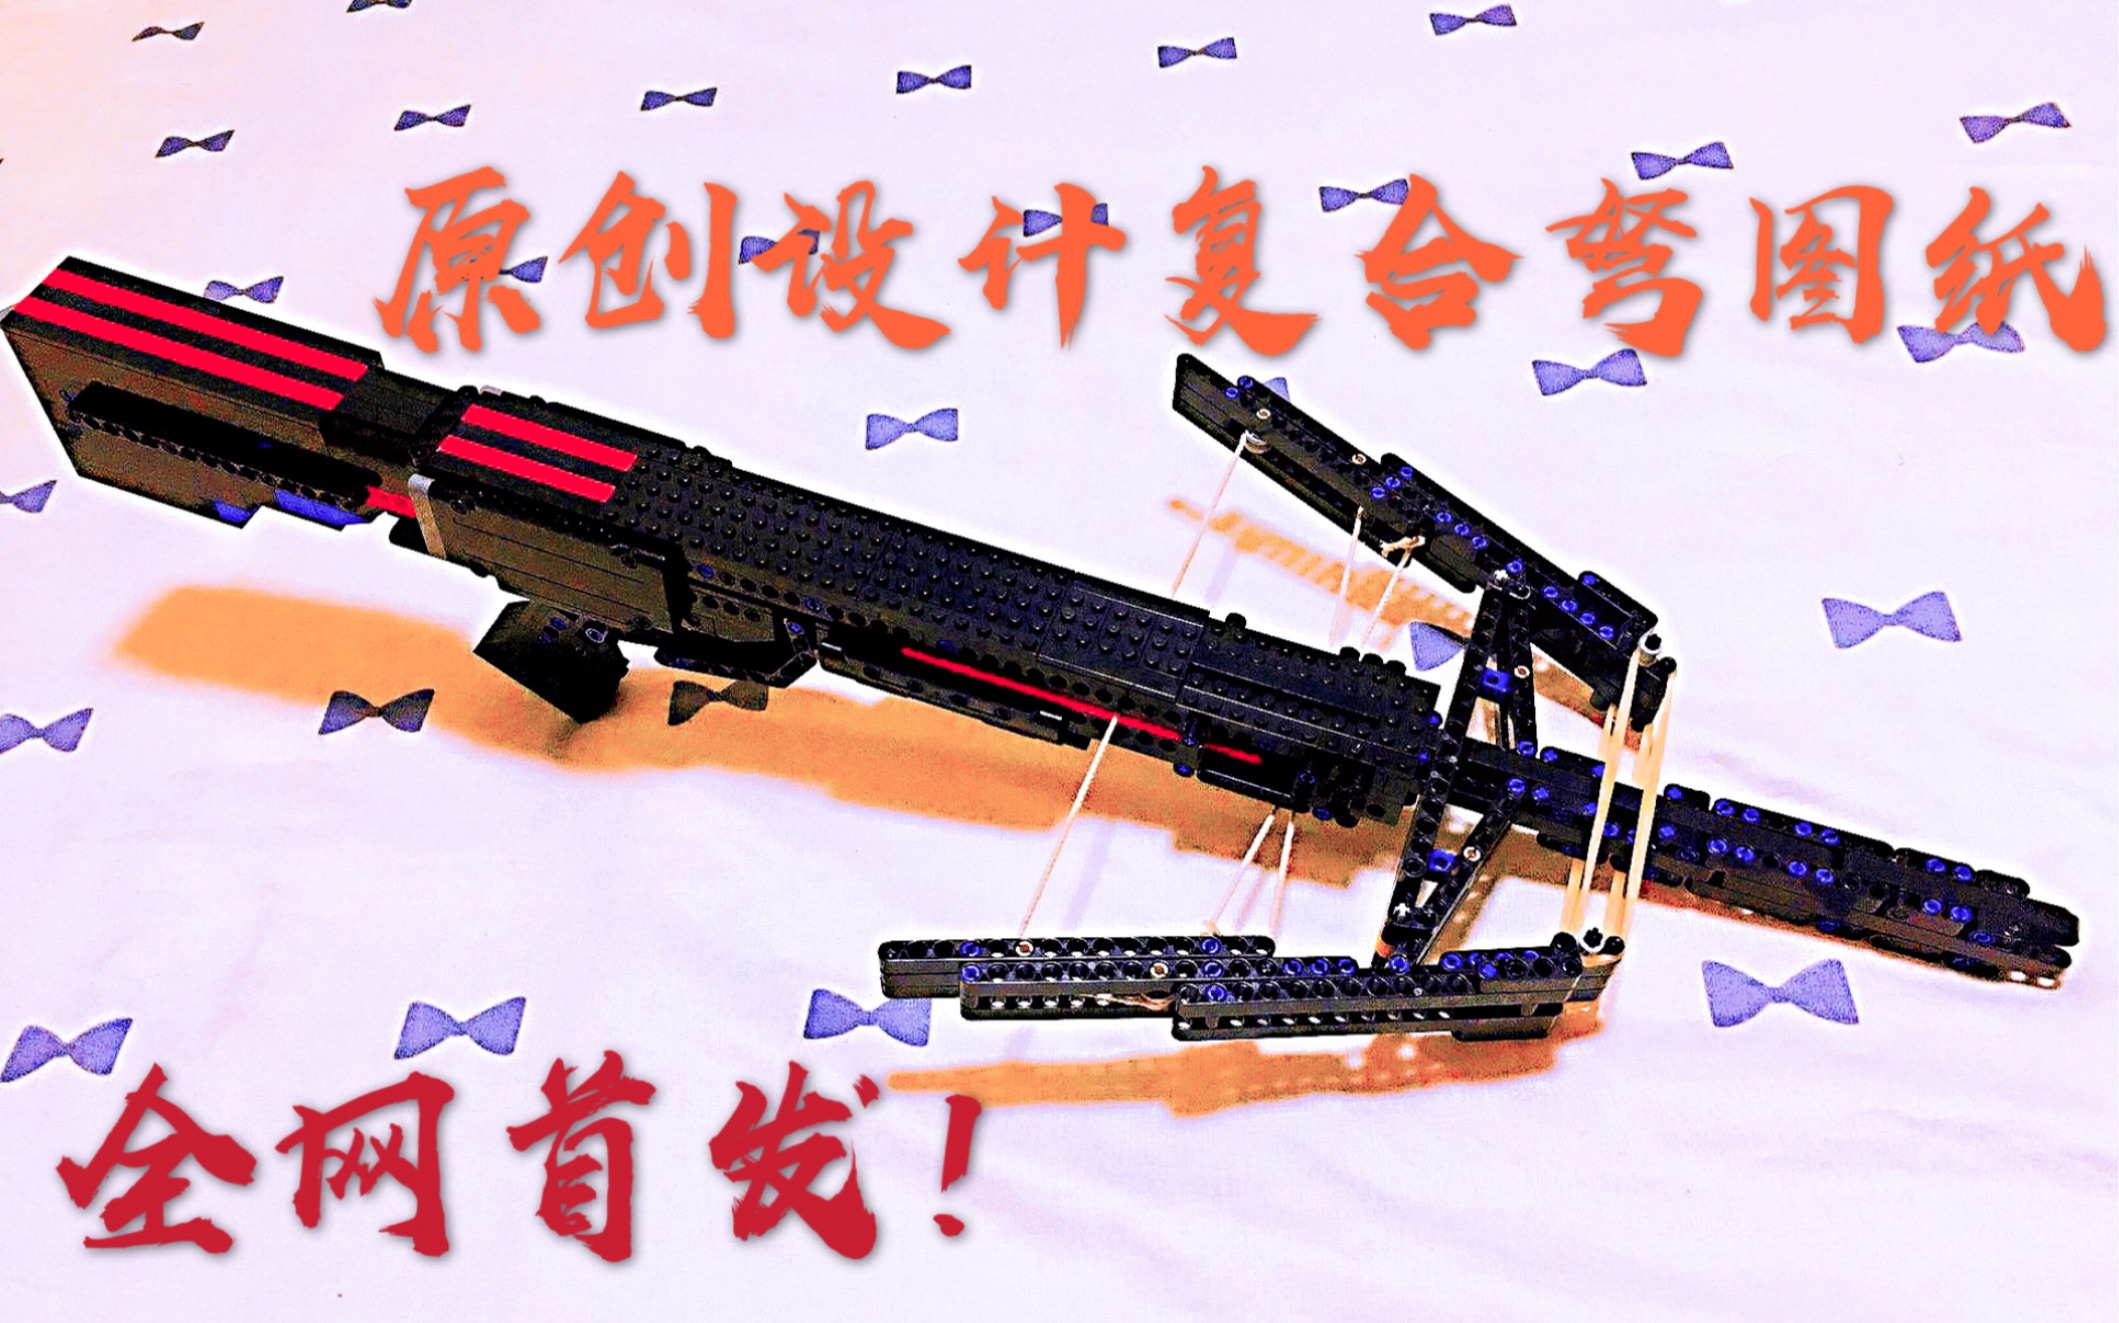 乐高 贝雷塔PX4 积木枪搭建教程图纸-黎骕瑝铘-默认收藏夹-哔哩哔哩视频